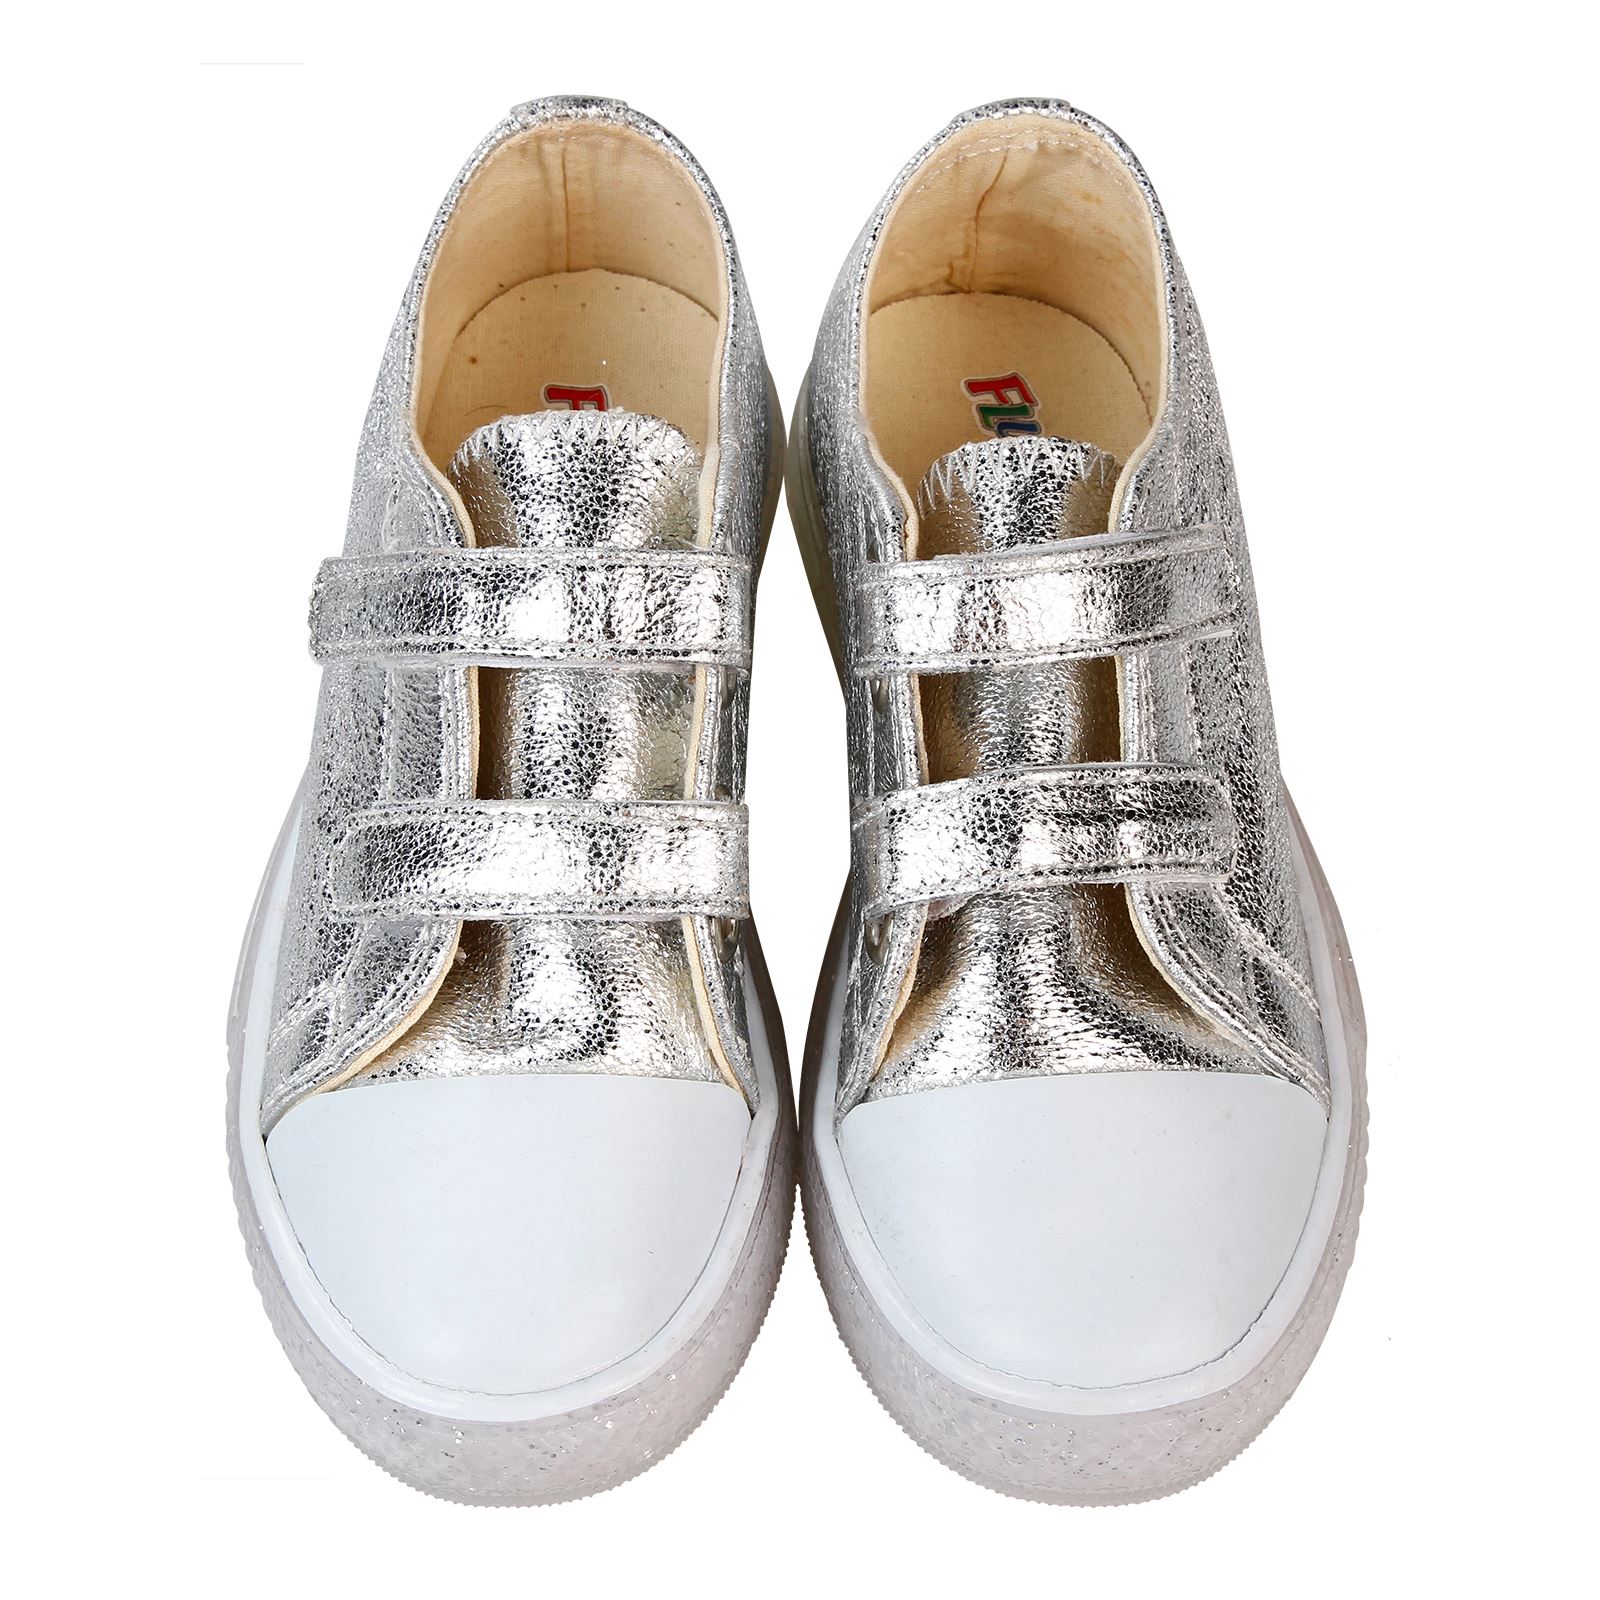 Flubber Kız Çocuk Spor Ayakkabı 26-30 Numara Gümüş